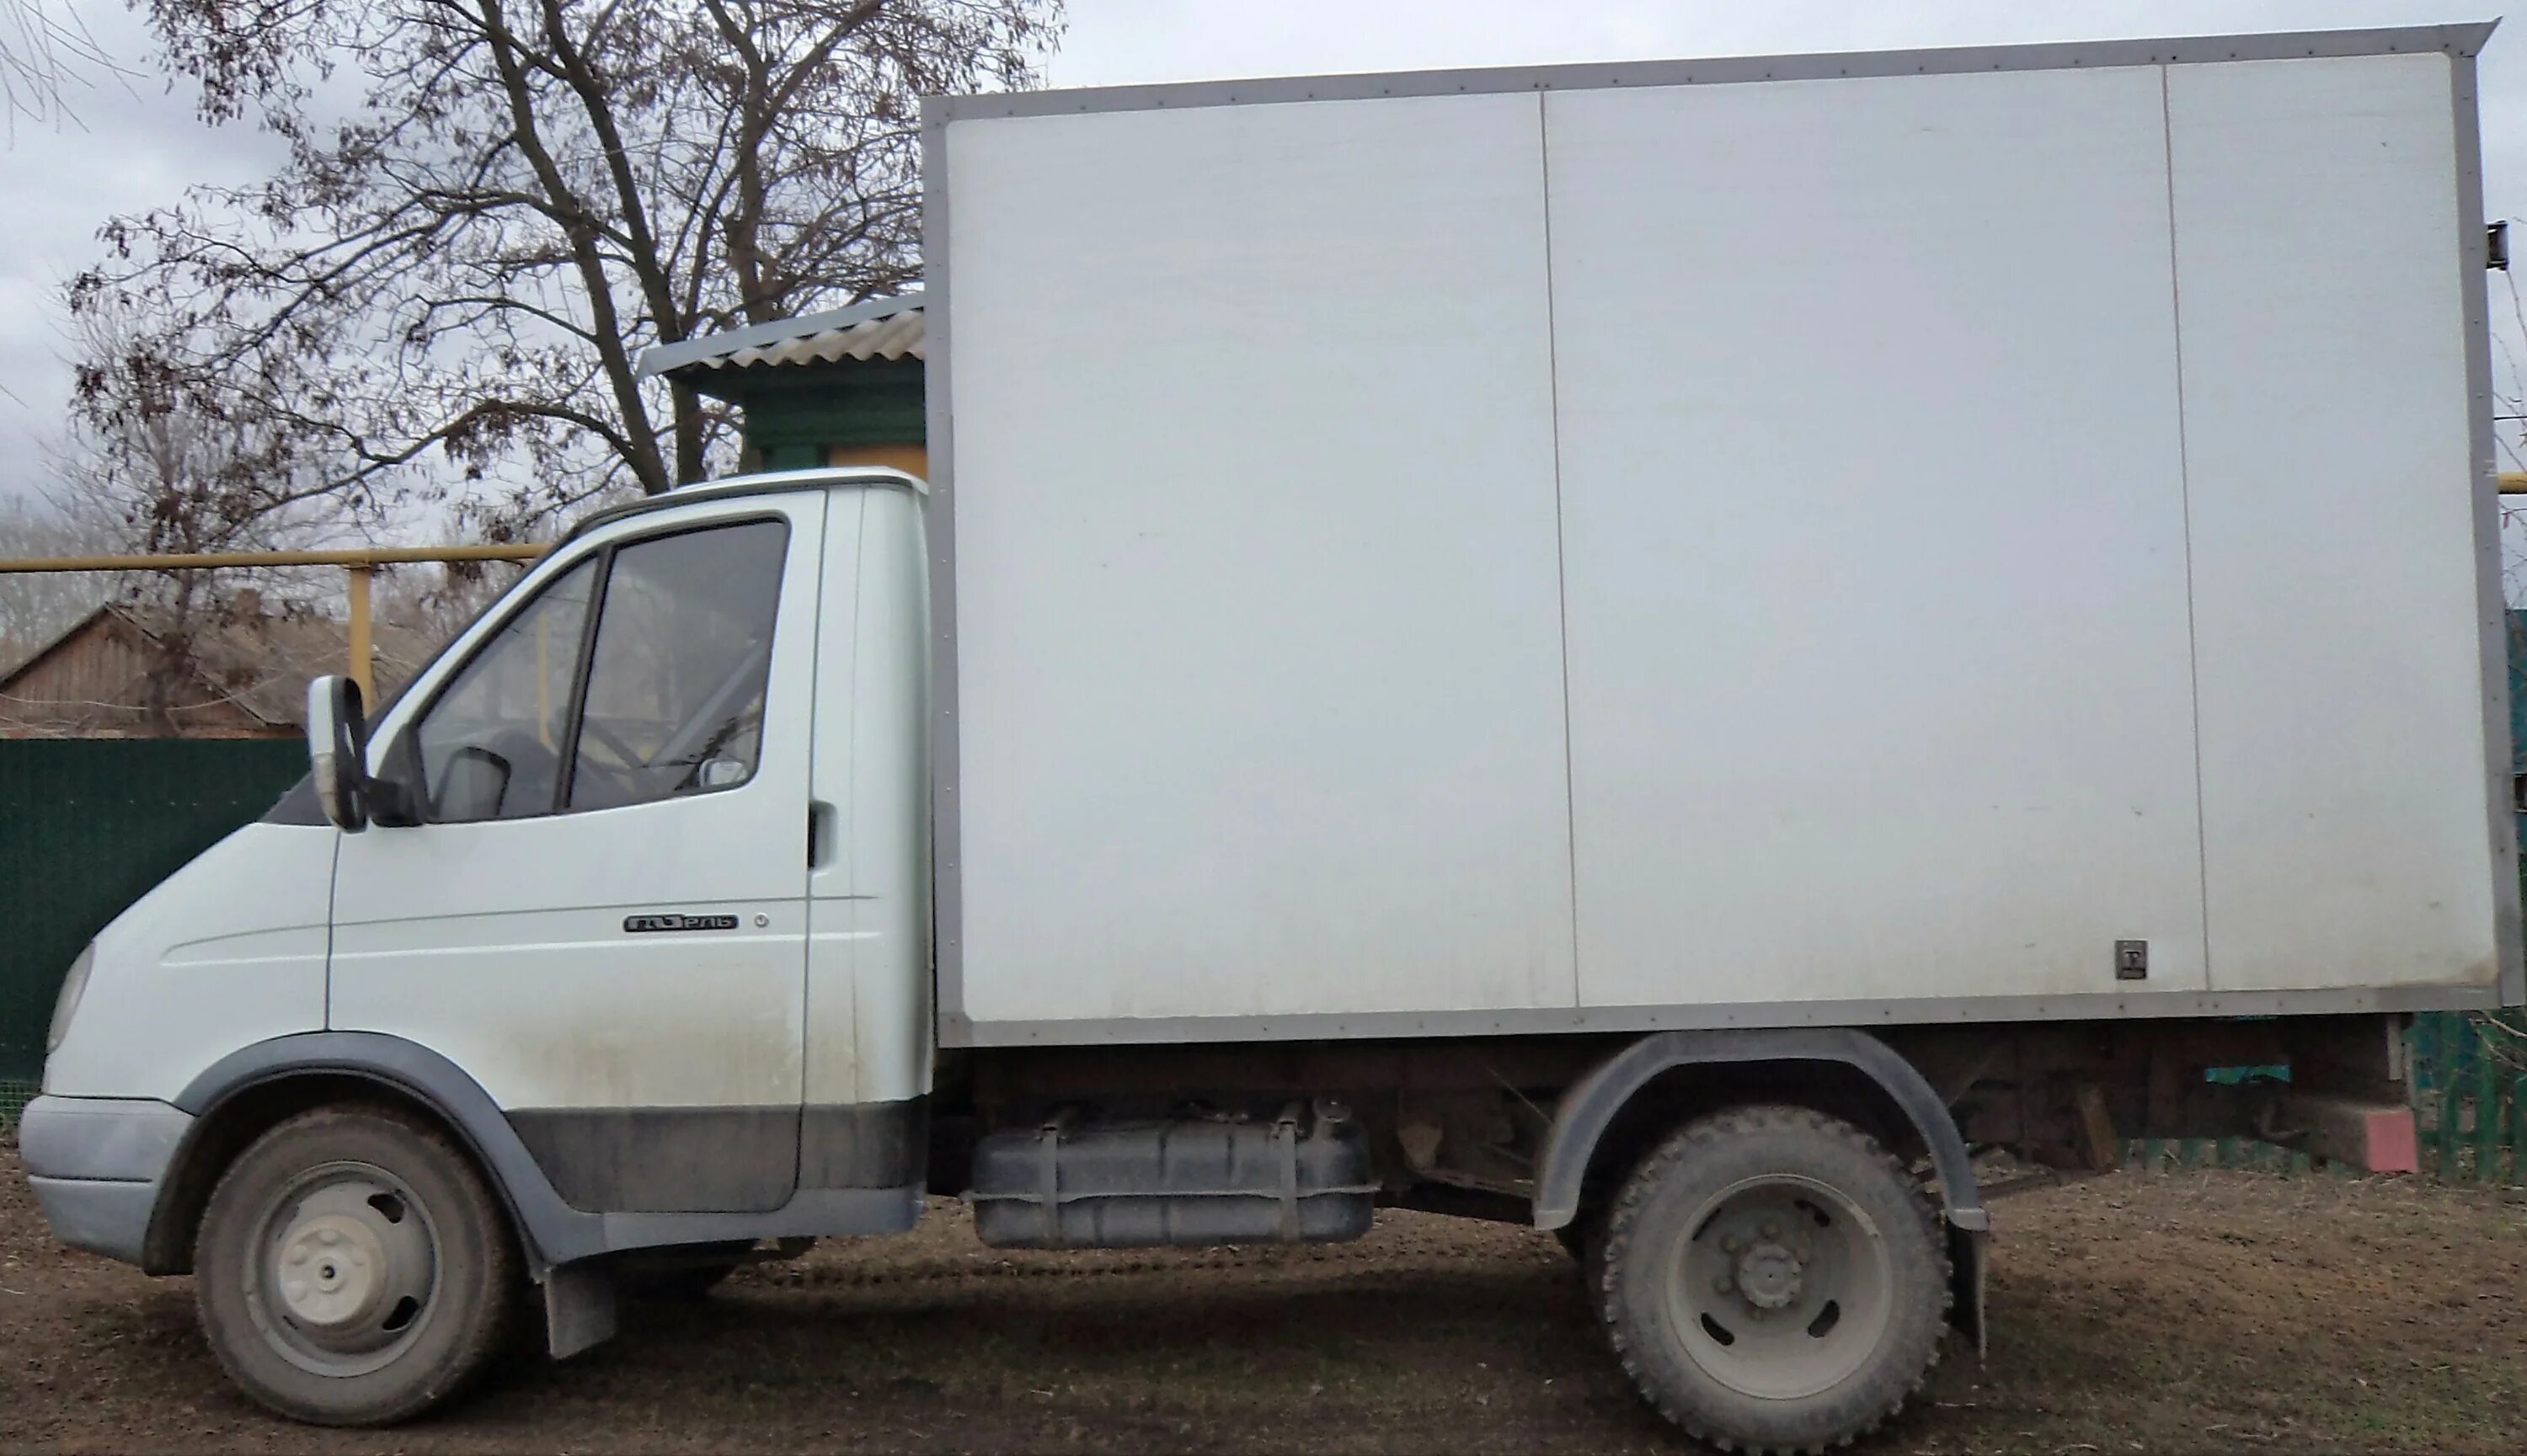 ГАЗ 330202-750 фургон. ГАЗ 2747 фургон грузовой. ГАЗ 330202 изотермический фургон. ГАЗ Газель 330202. Как отличить газели